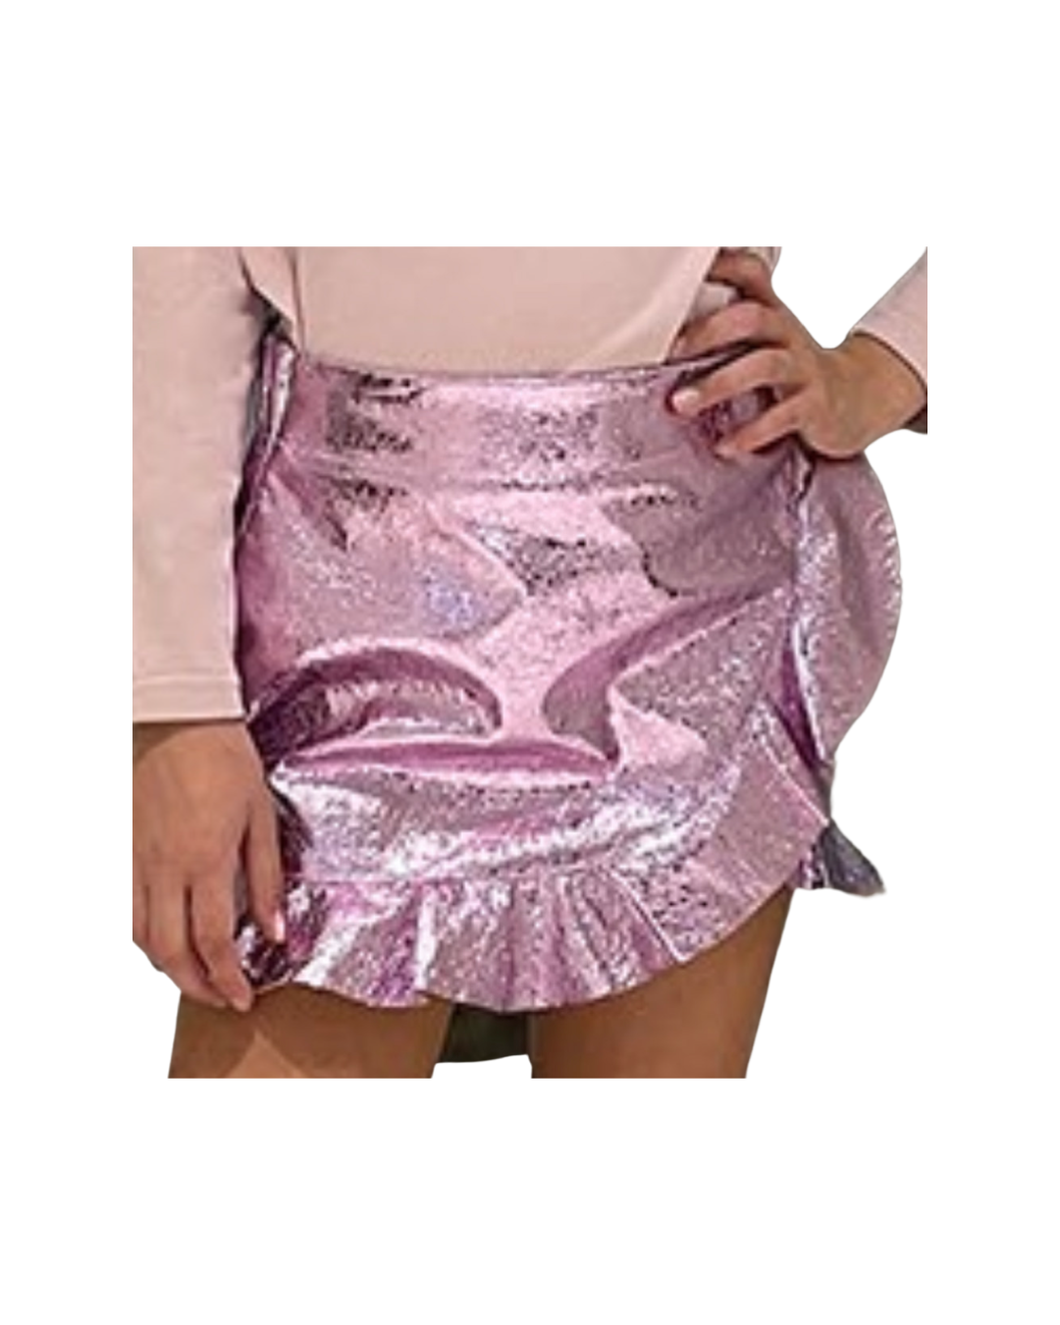 *Little Olin Metallic Skirt - Pink